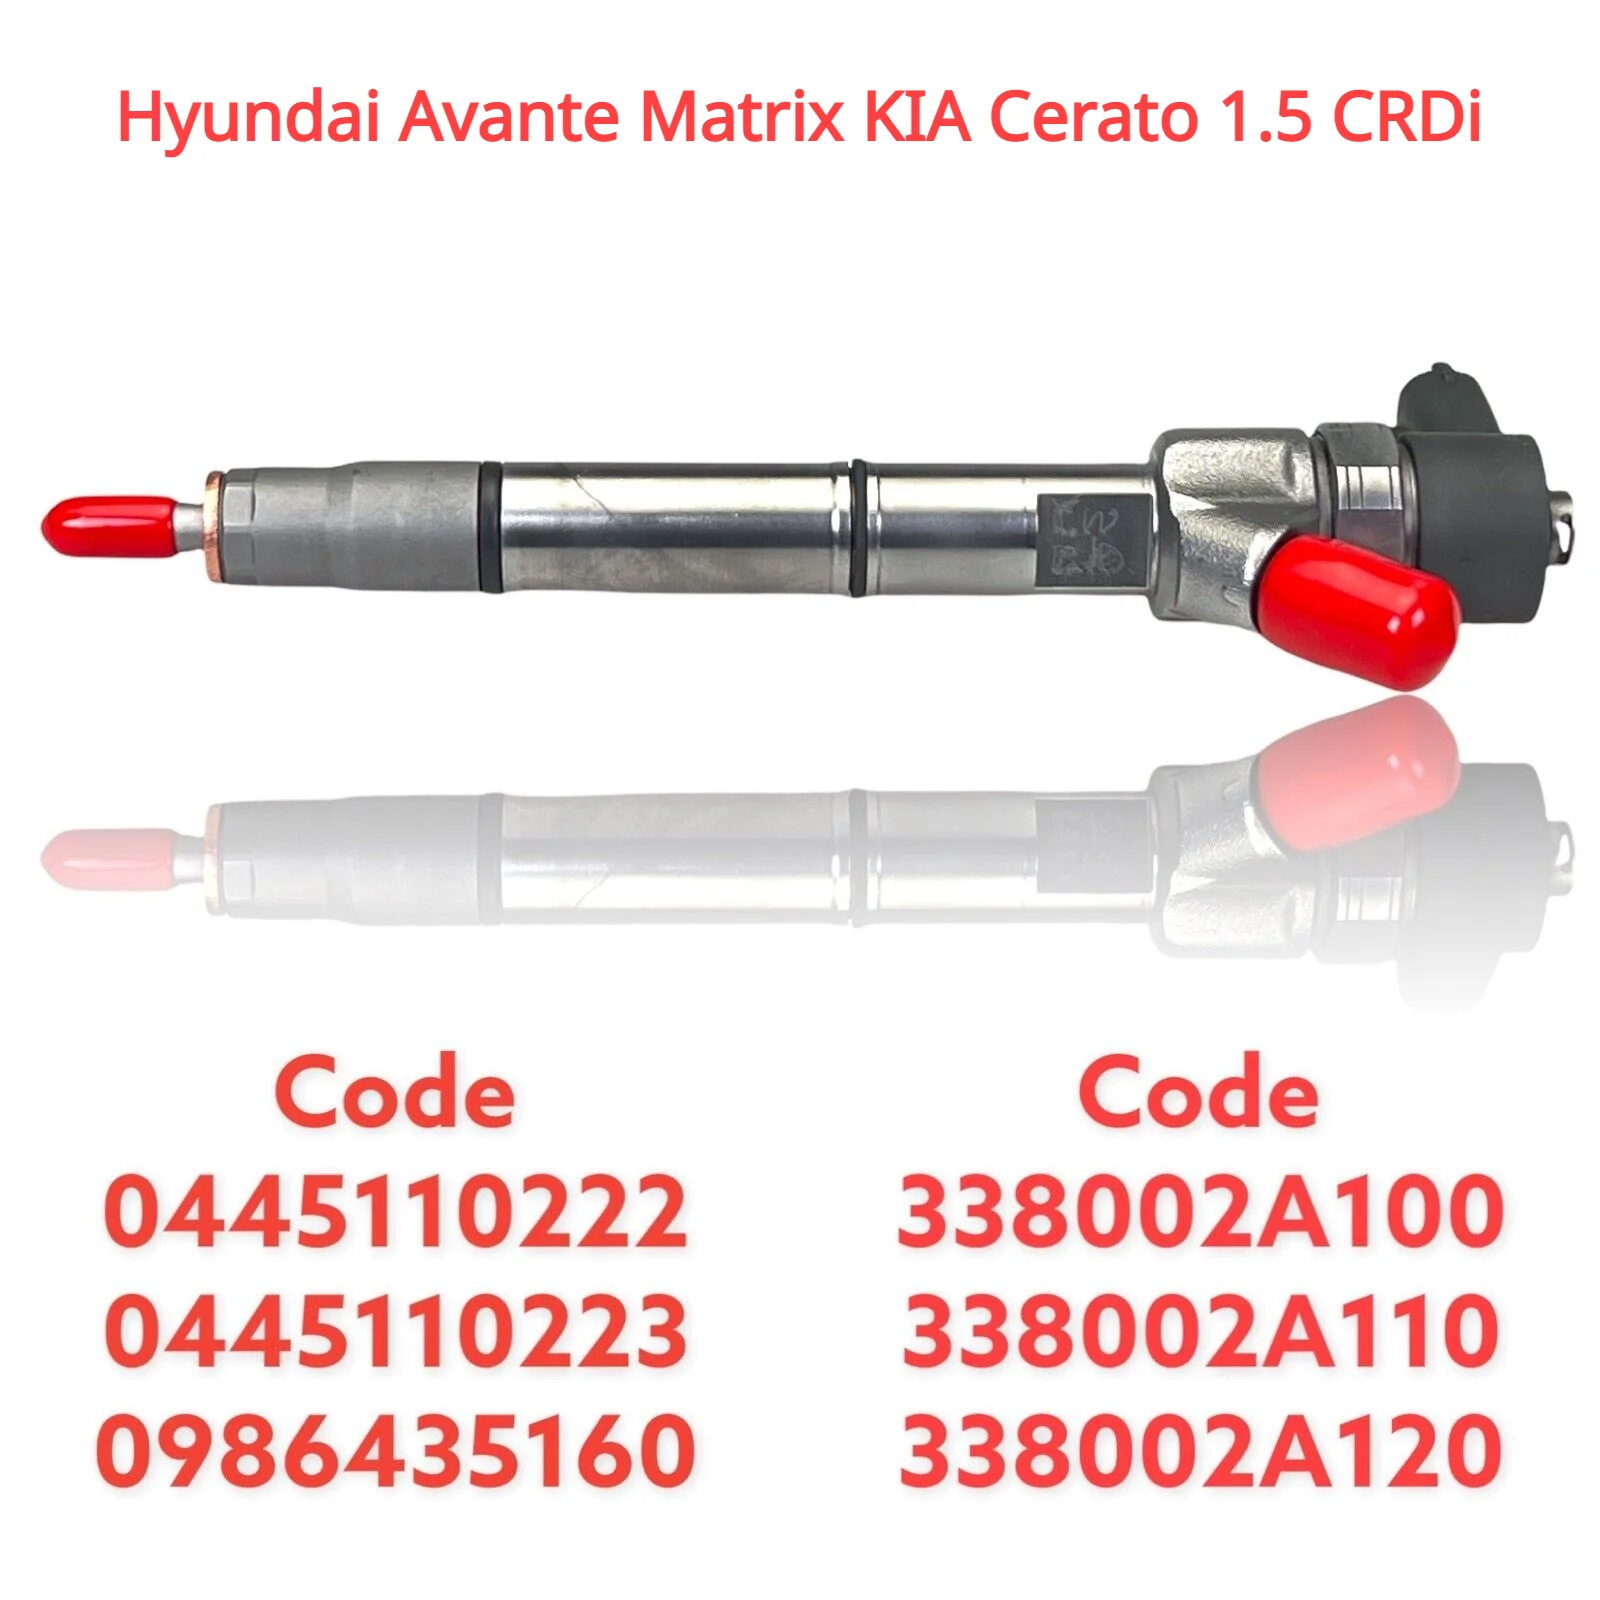 

0445110222 / 0445110223 / 33800-2A100 / 338002A110 New Diesel Fuel Injector For Hyundai Avante Matrix KIA Cerato 1.5 CRDi